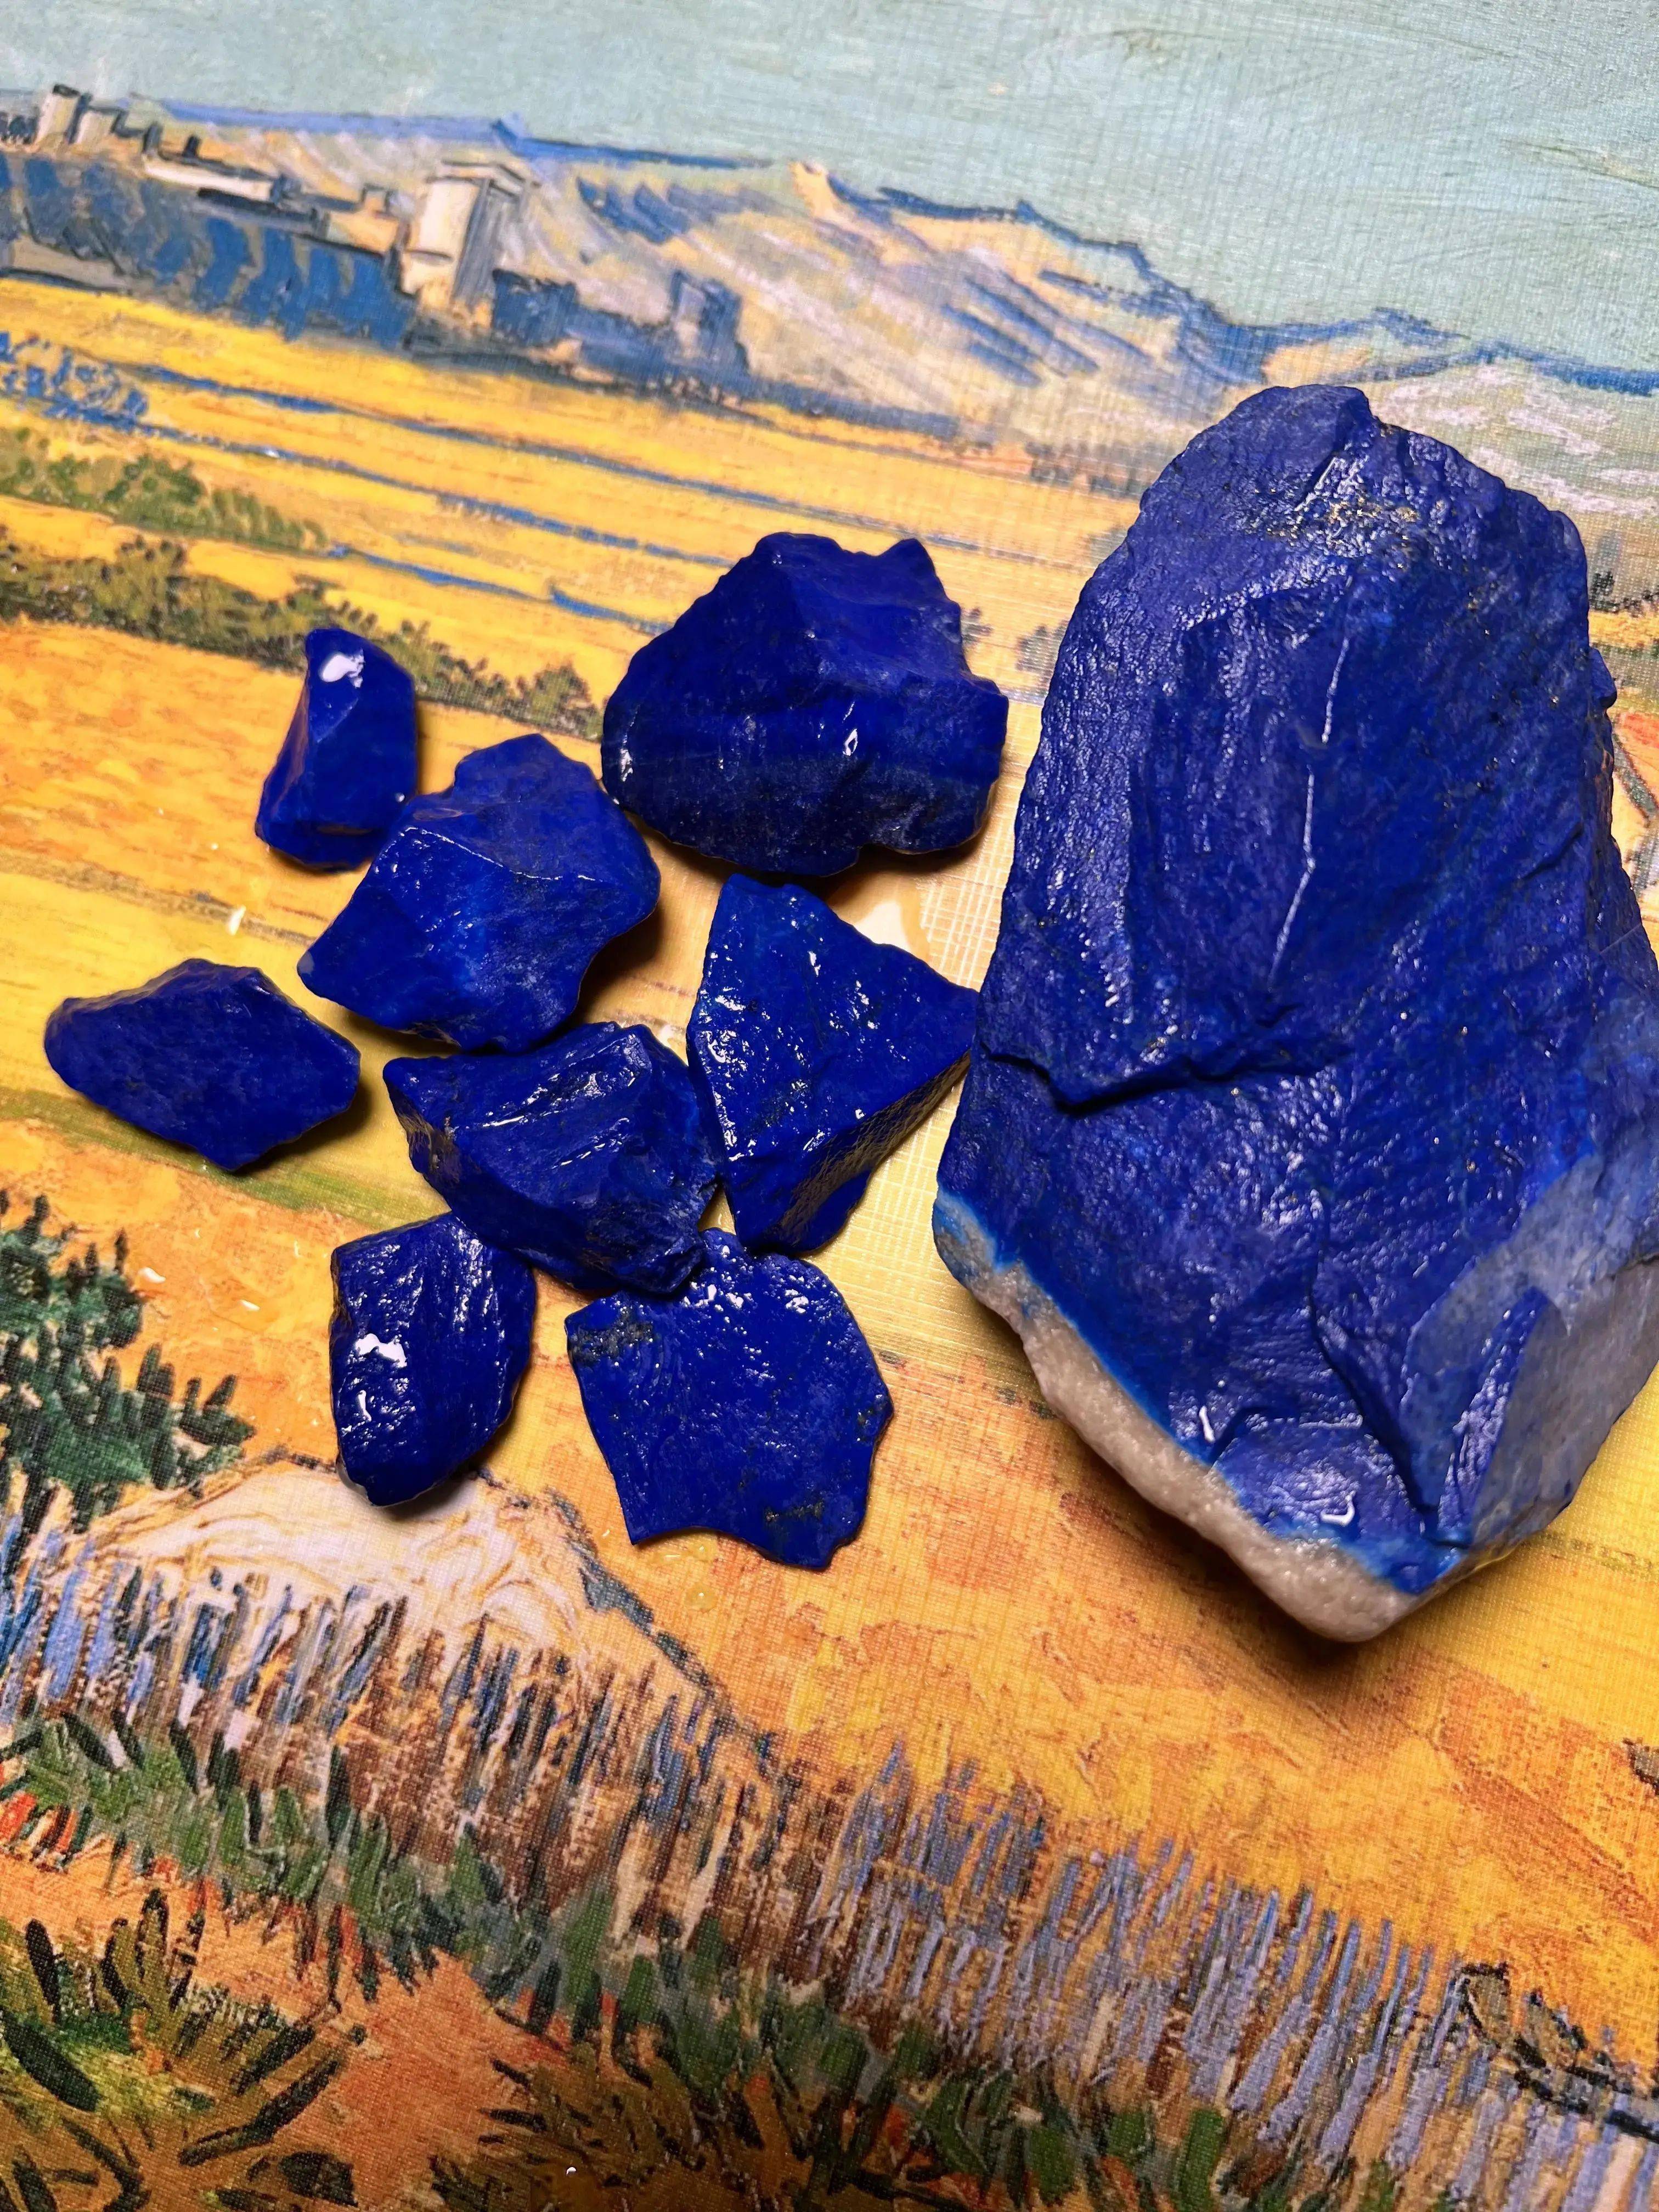 的无白无金老料戒面青金石爱好者们,一起来聊聊这神秘的蓝色石头吧